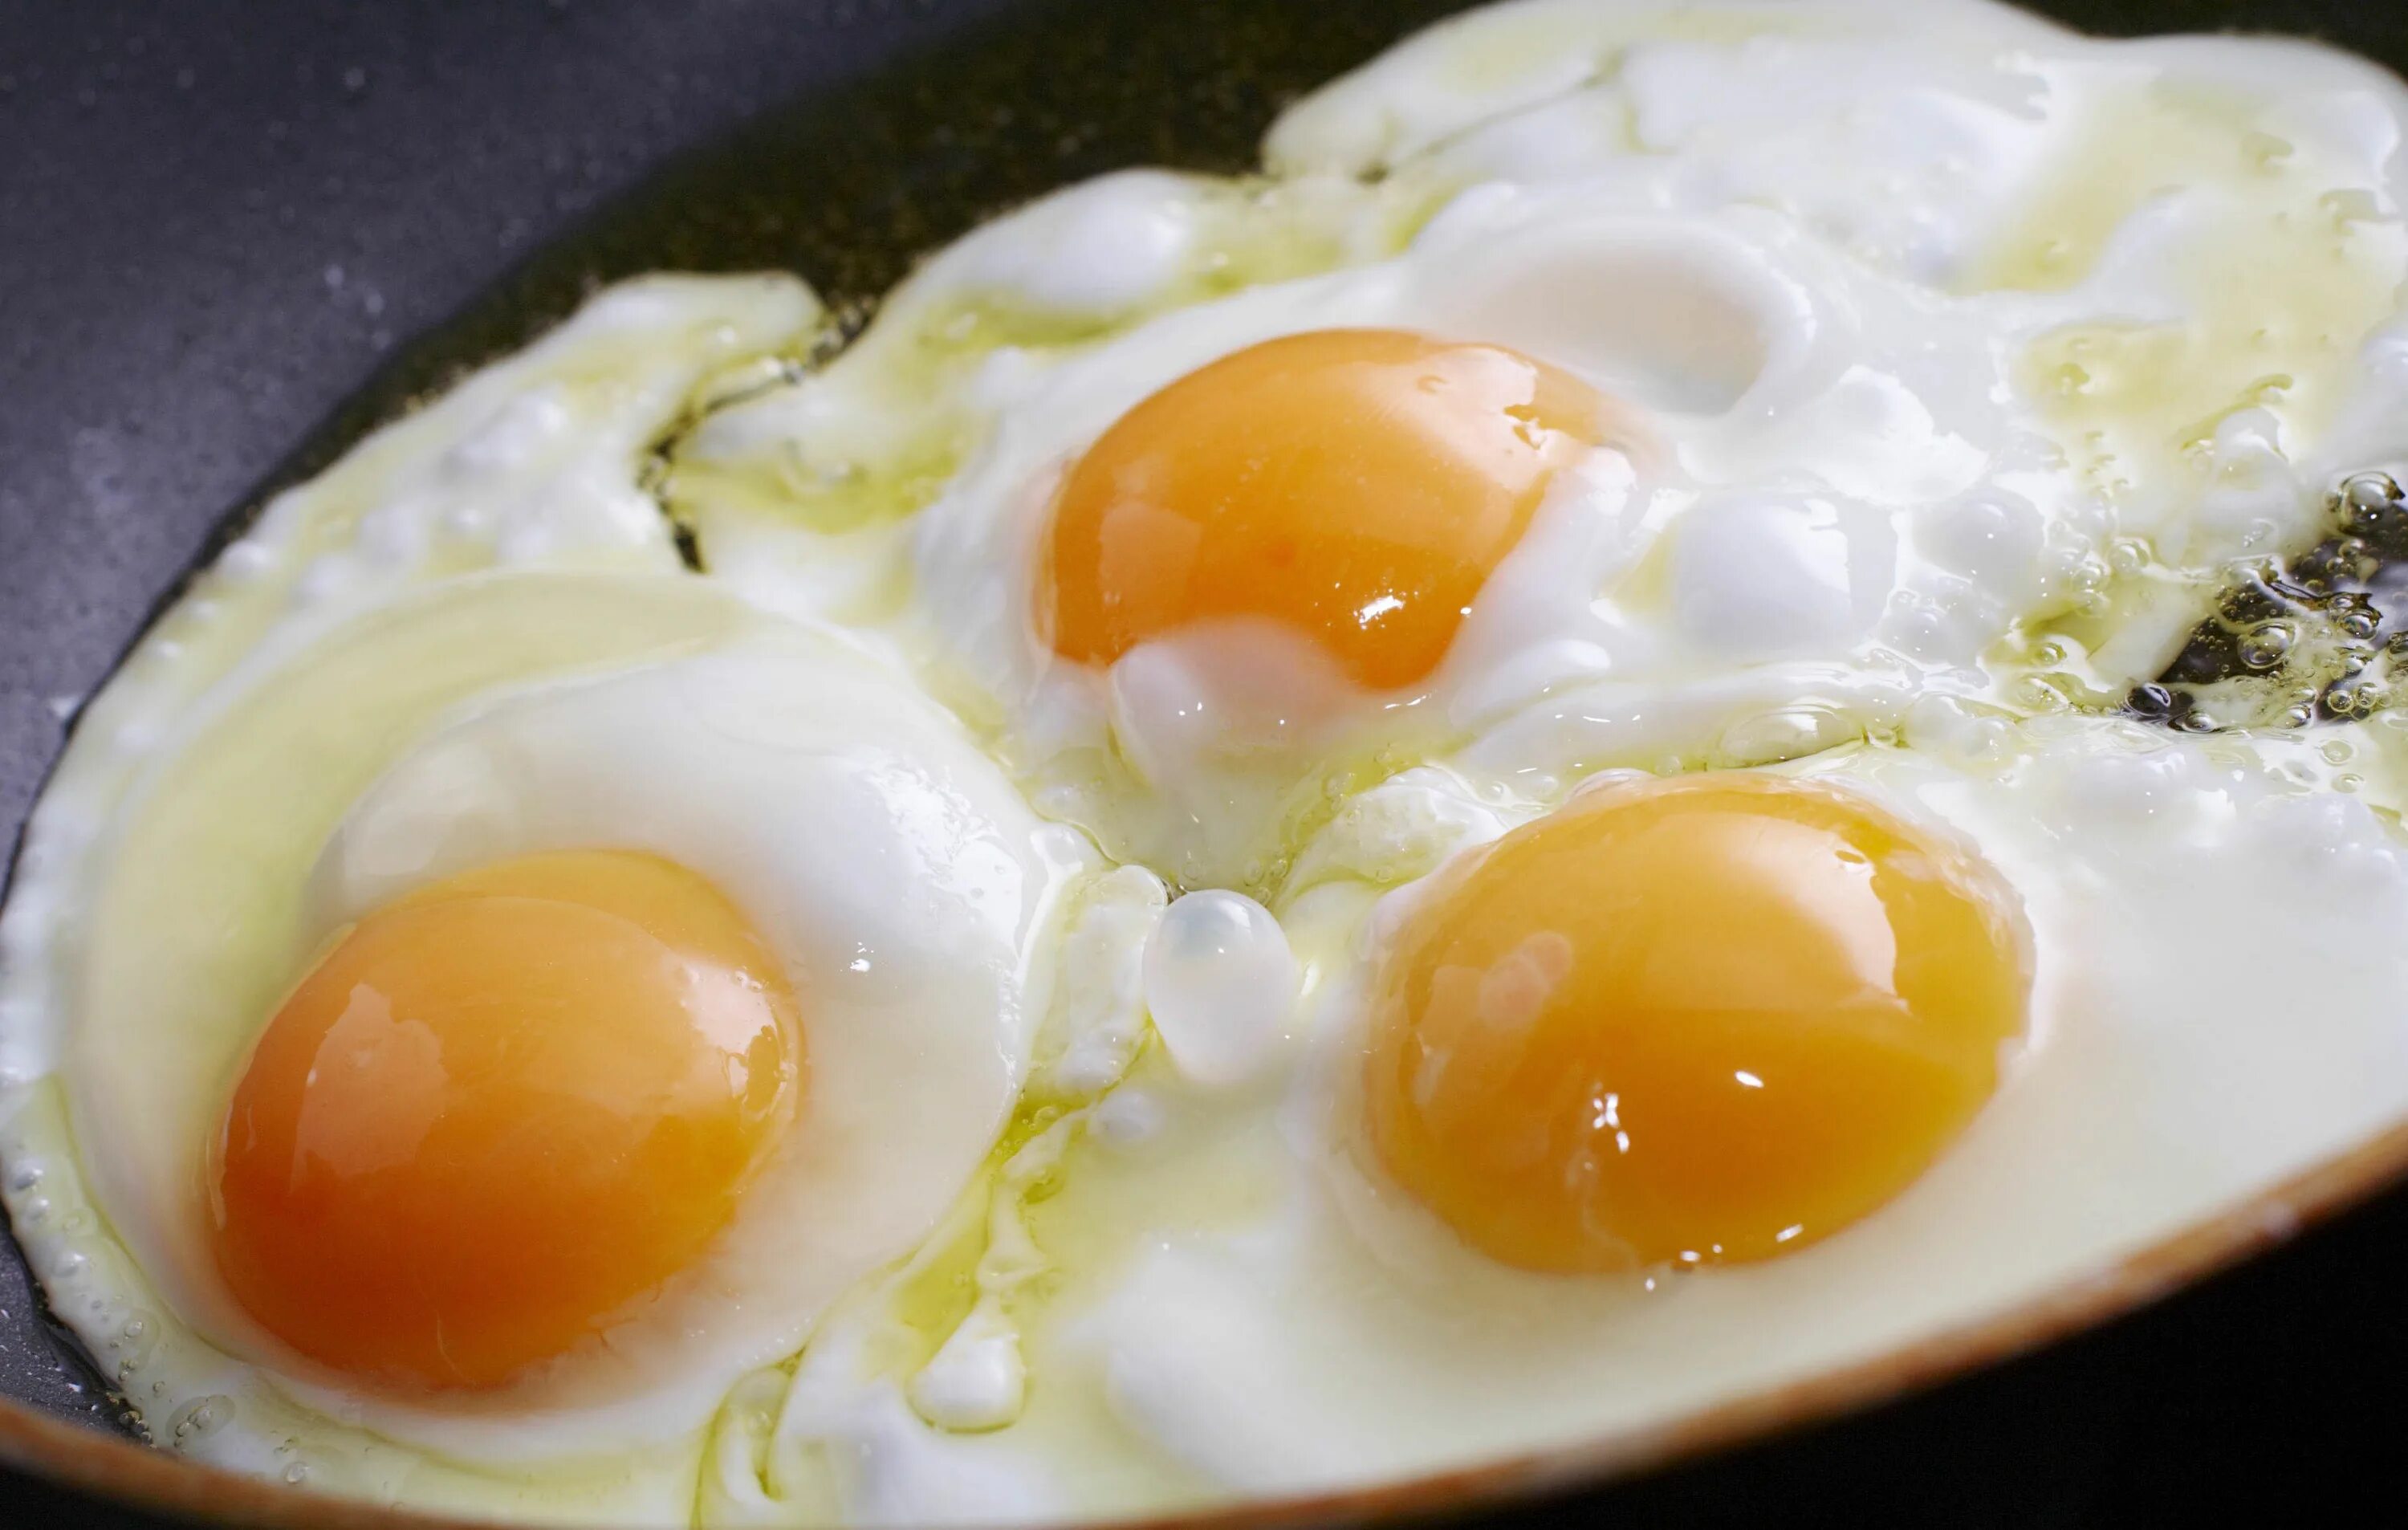 Cooked egg. Яичница. Яичница глазунья. Яйца готовые. Жареные яйца.